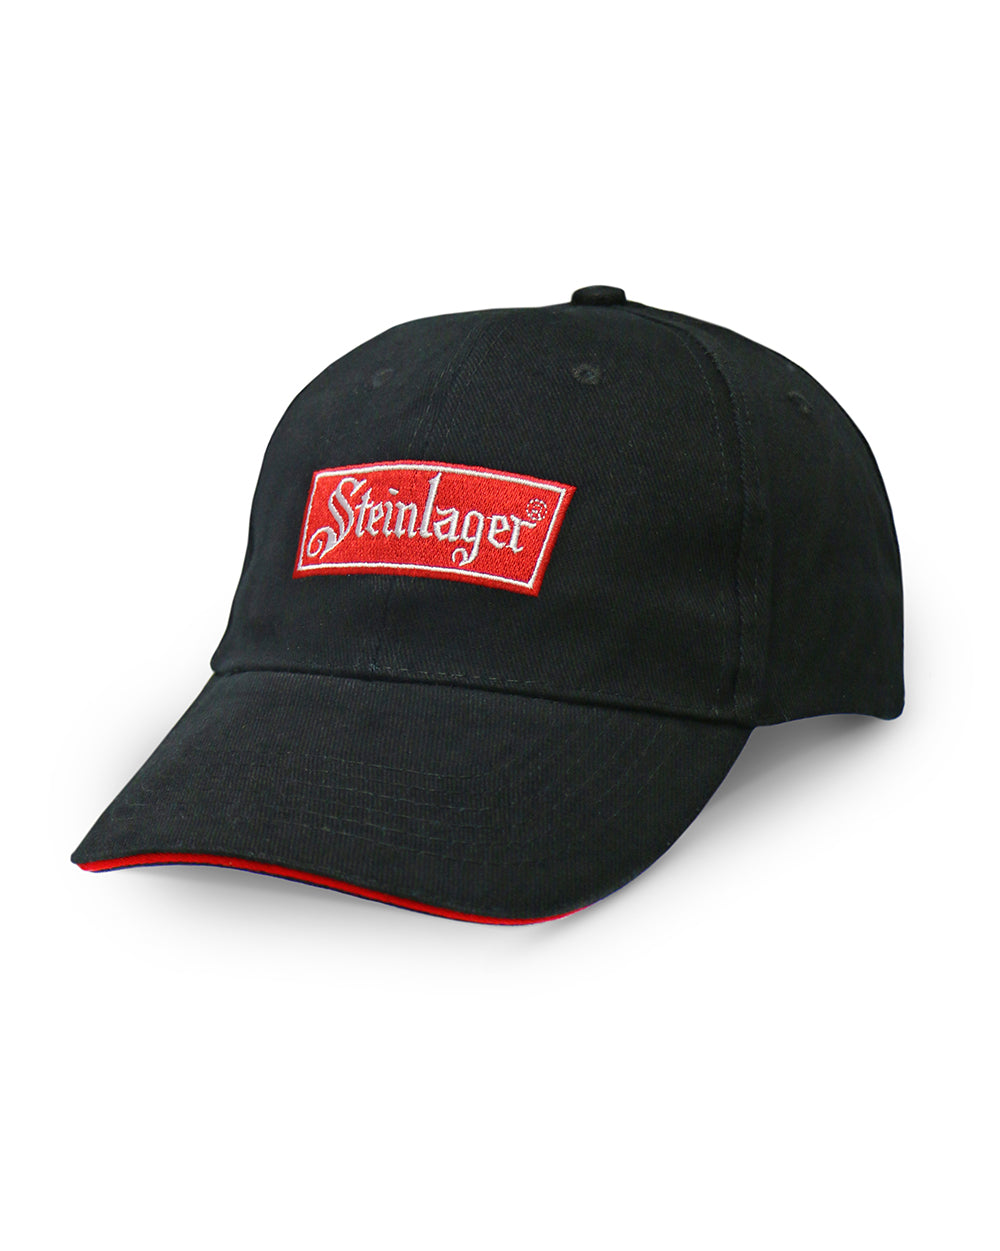 Steinlager Cap -  Beer Gear Apparel & Merchandise - Speights - Lion Red - VB - Tokyo Dy merch